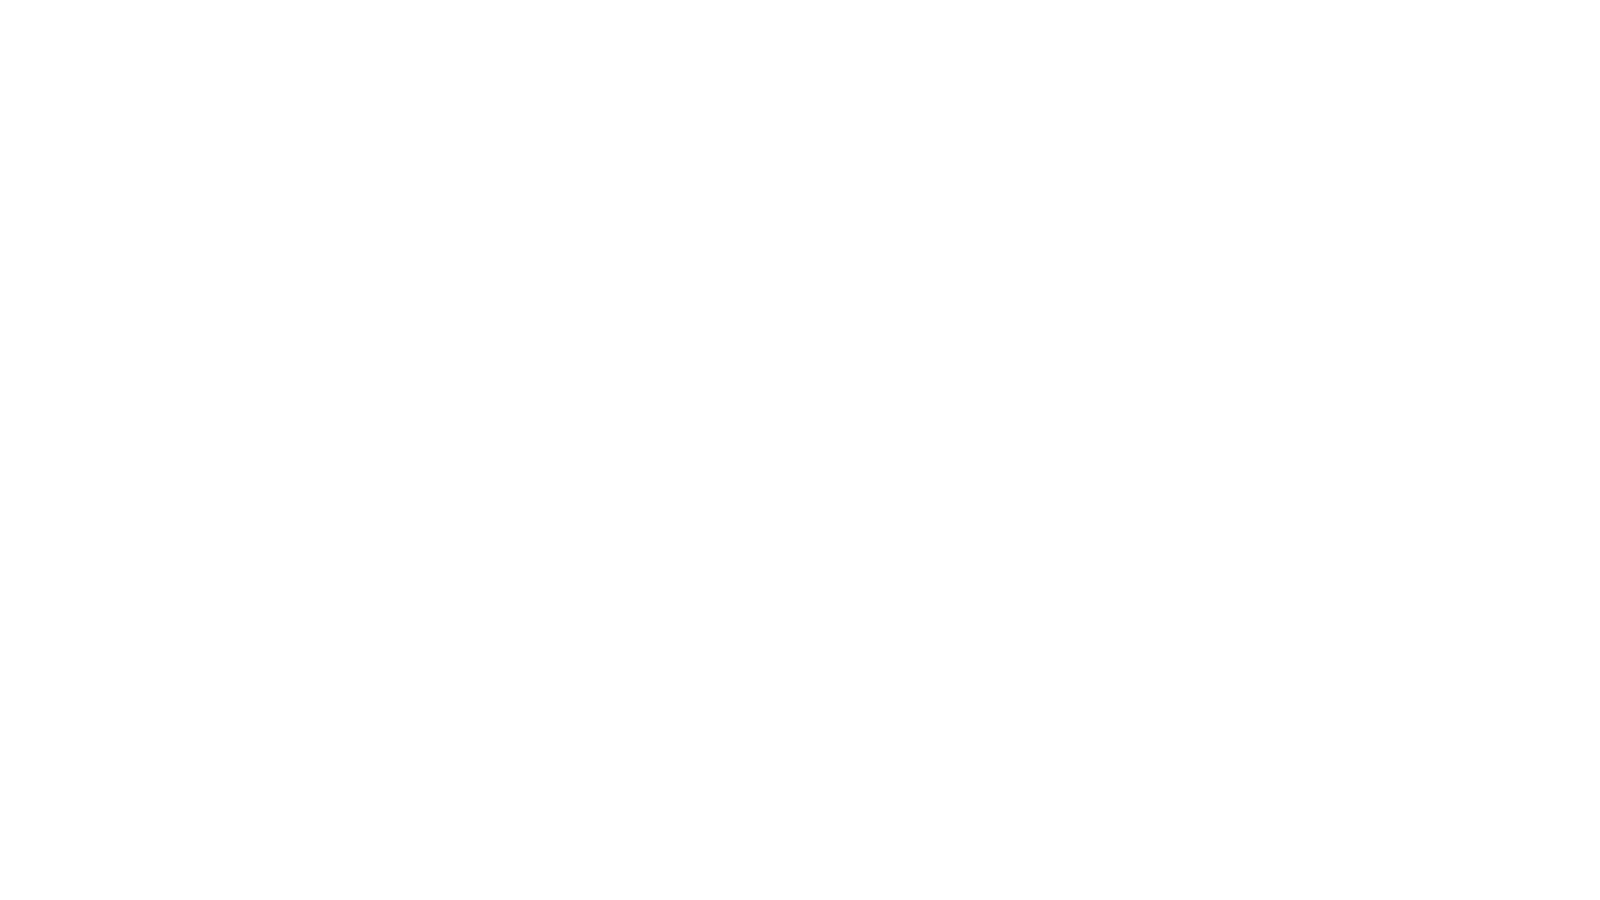 Chris tar en nærmere kikk på den nordiske utgaven av Ghostbusters Ultimate Collection på 4K UHD

Besøk oss:
https://attackofthekillerkast.com

Støtt oss:
https://attackofthekillerkast.com/gopremium

#ghostbusters #billmurray #ivanreitman